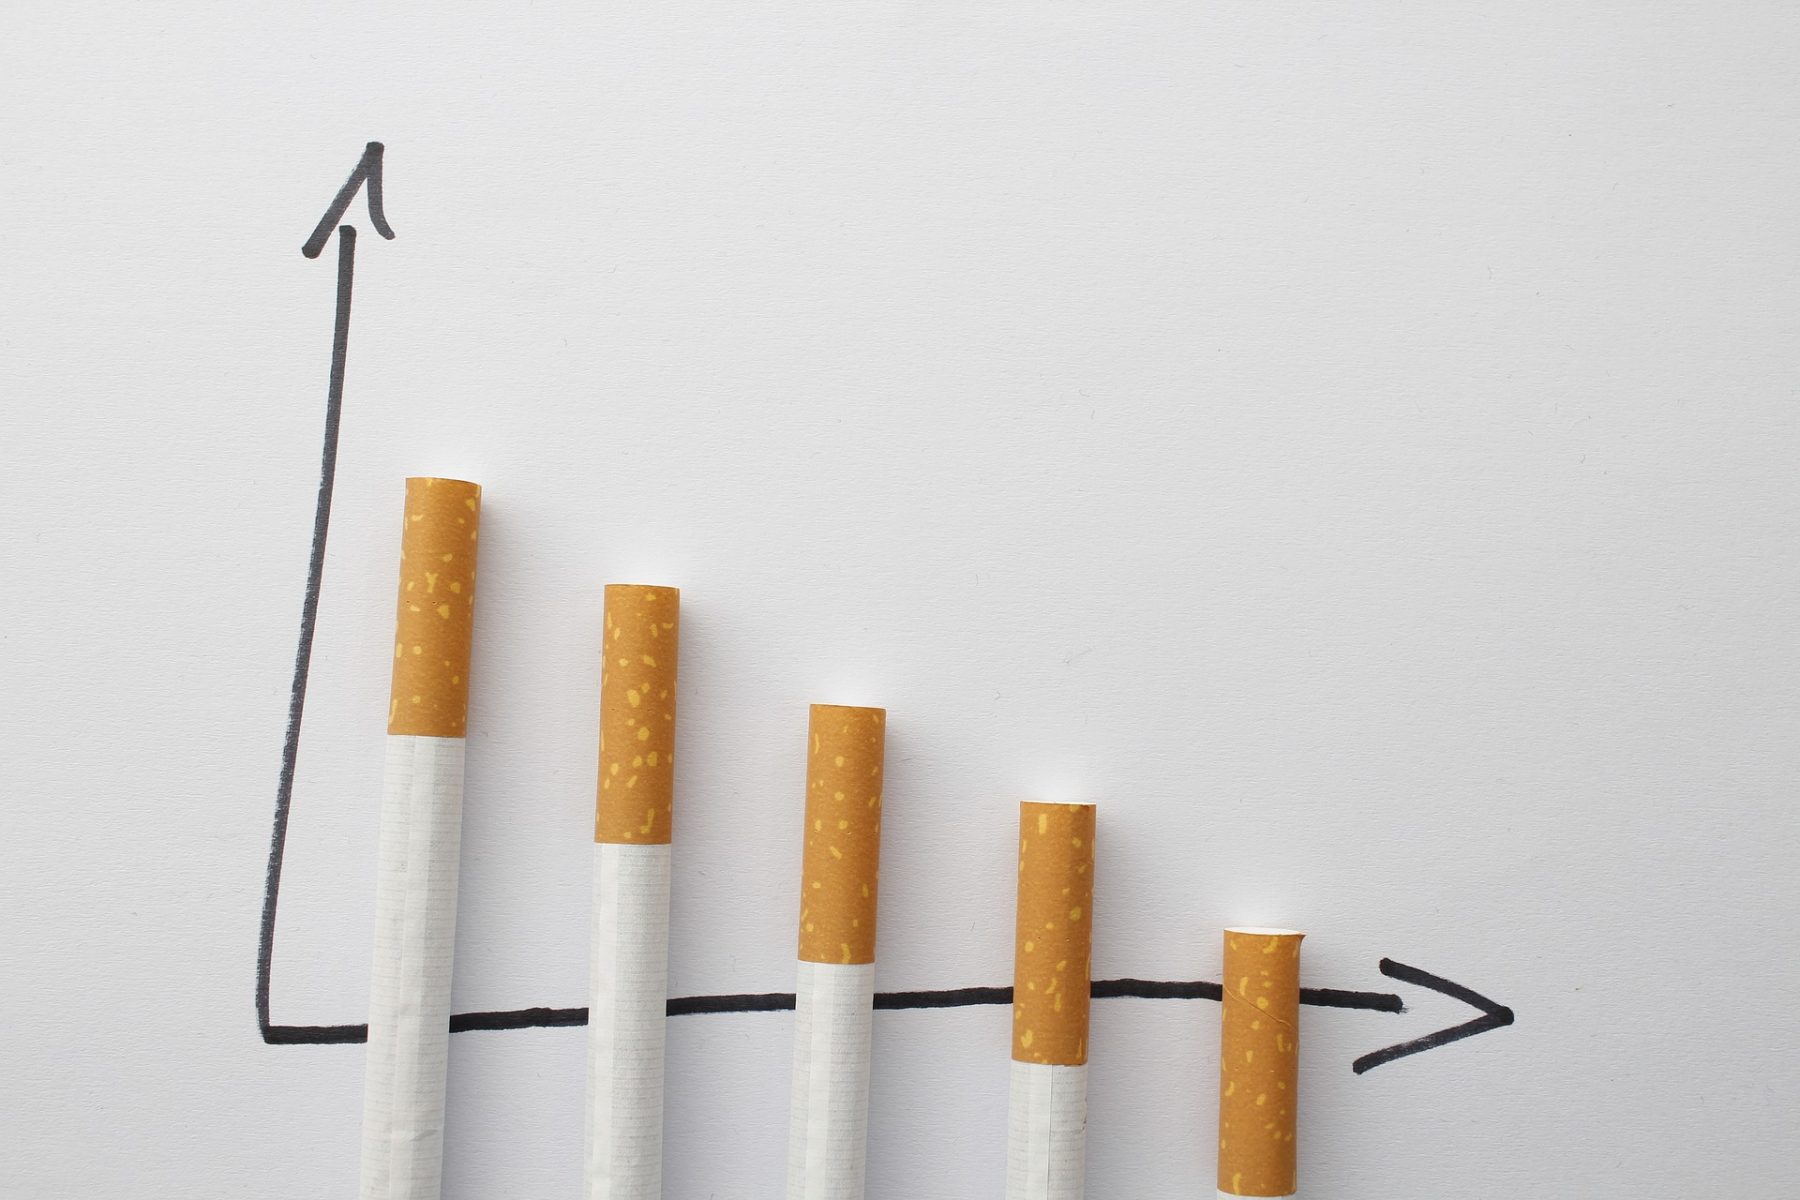 Καναδάς τσιγάρα μενθόλης: Η απαγόρευση τσιγάρων με γεύση μέντα έφερε μείωση σχεδόν 5% στις πωλήσεις